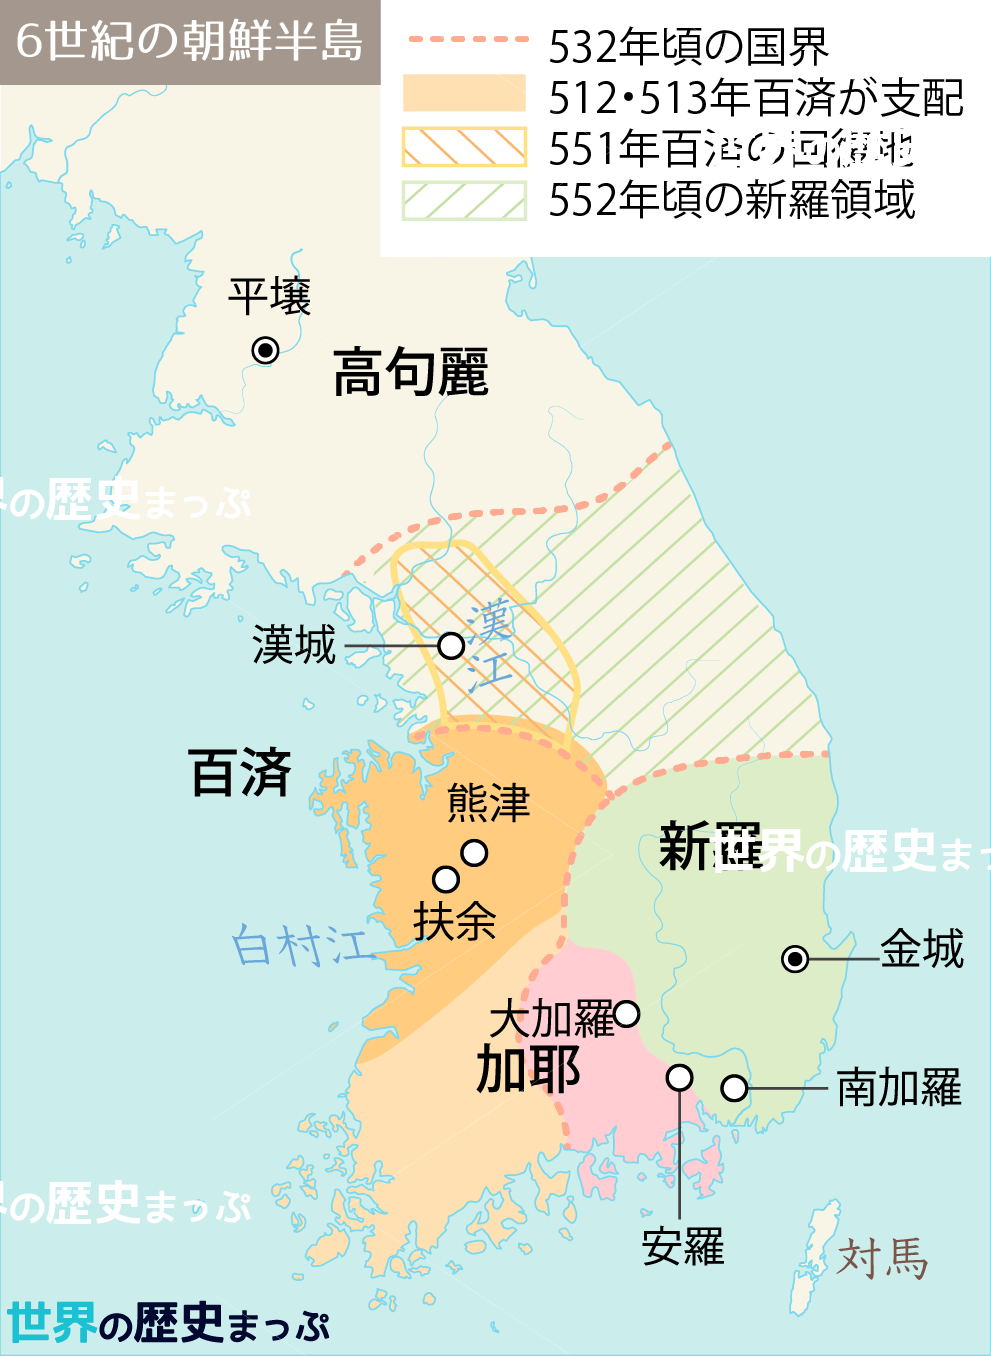 新羅 百済 6世紀の朝鮮半島地図 周辺国家の形成